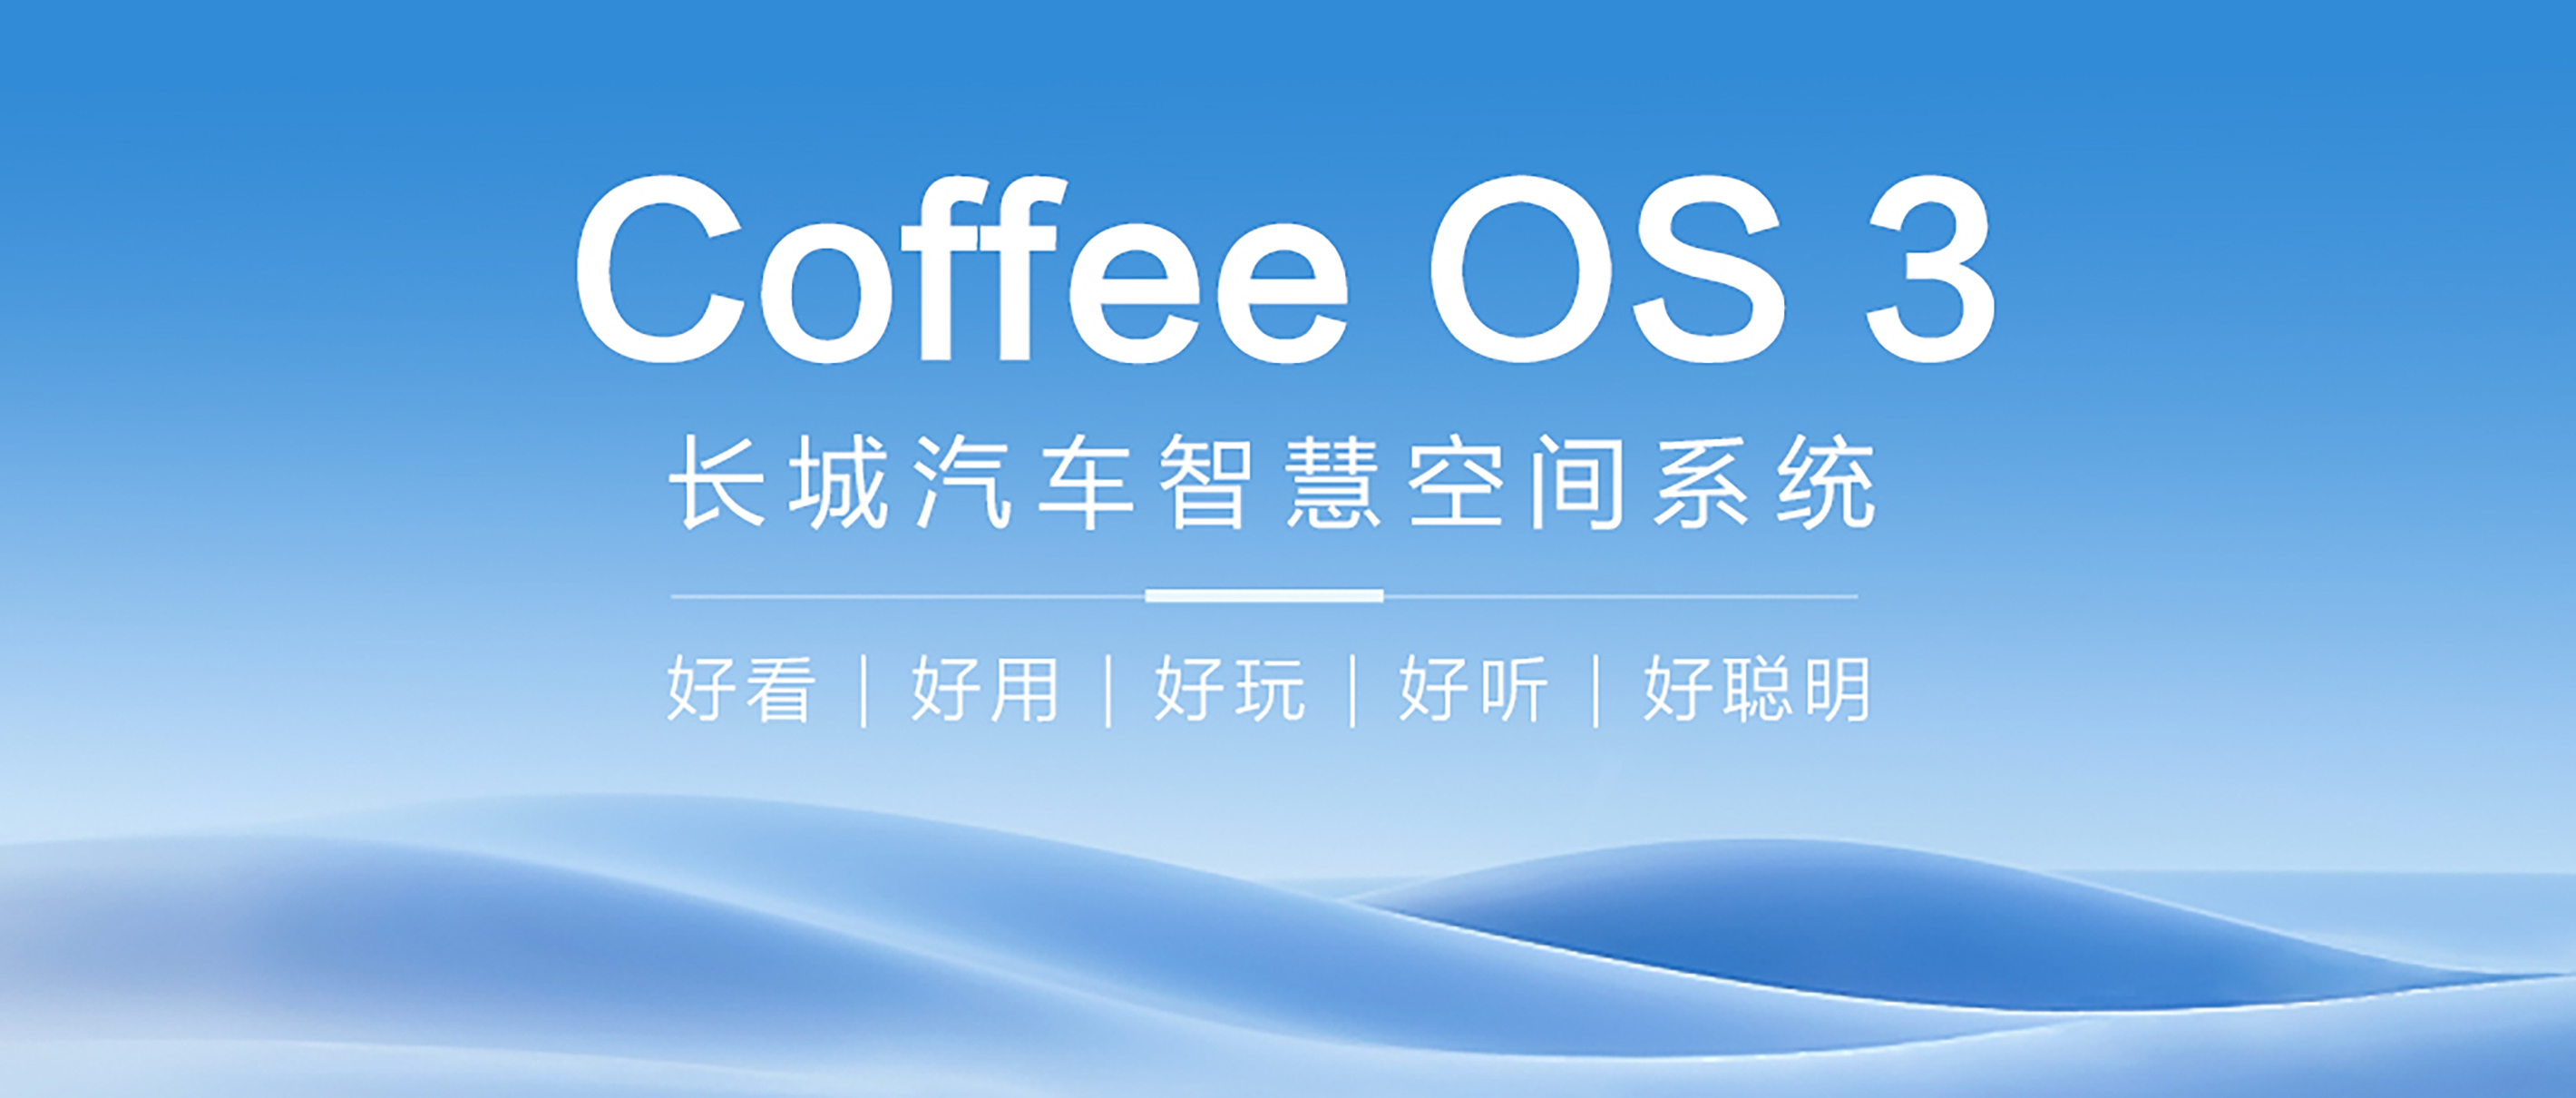 长城Coffee OS 3--解锁无尽奇思妙想